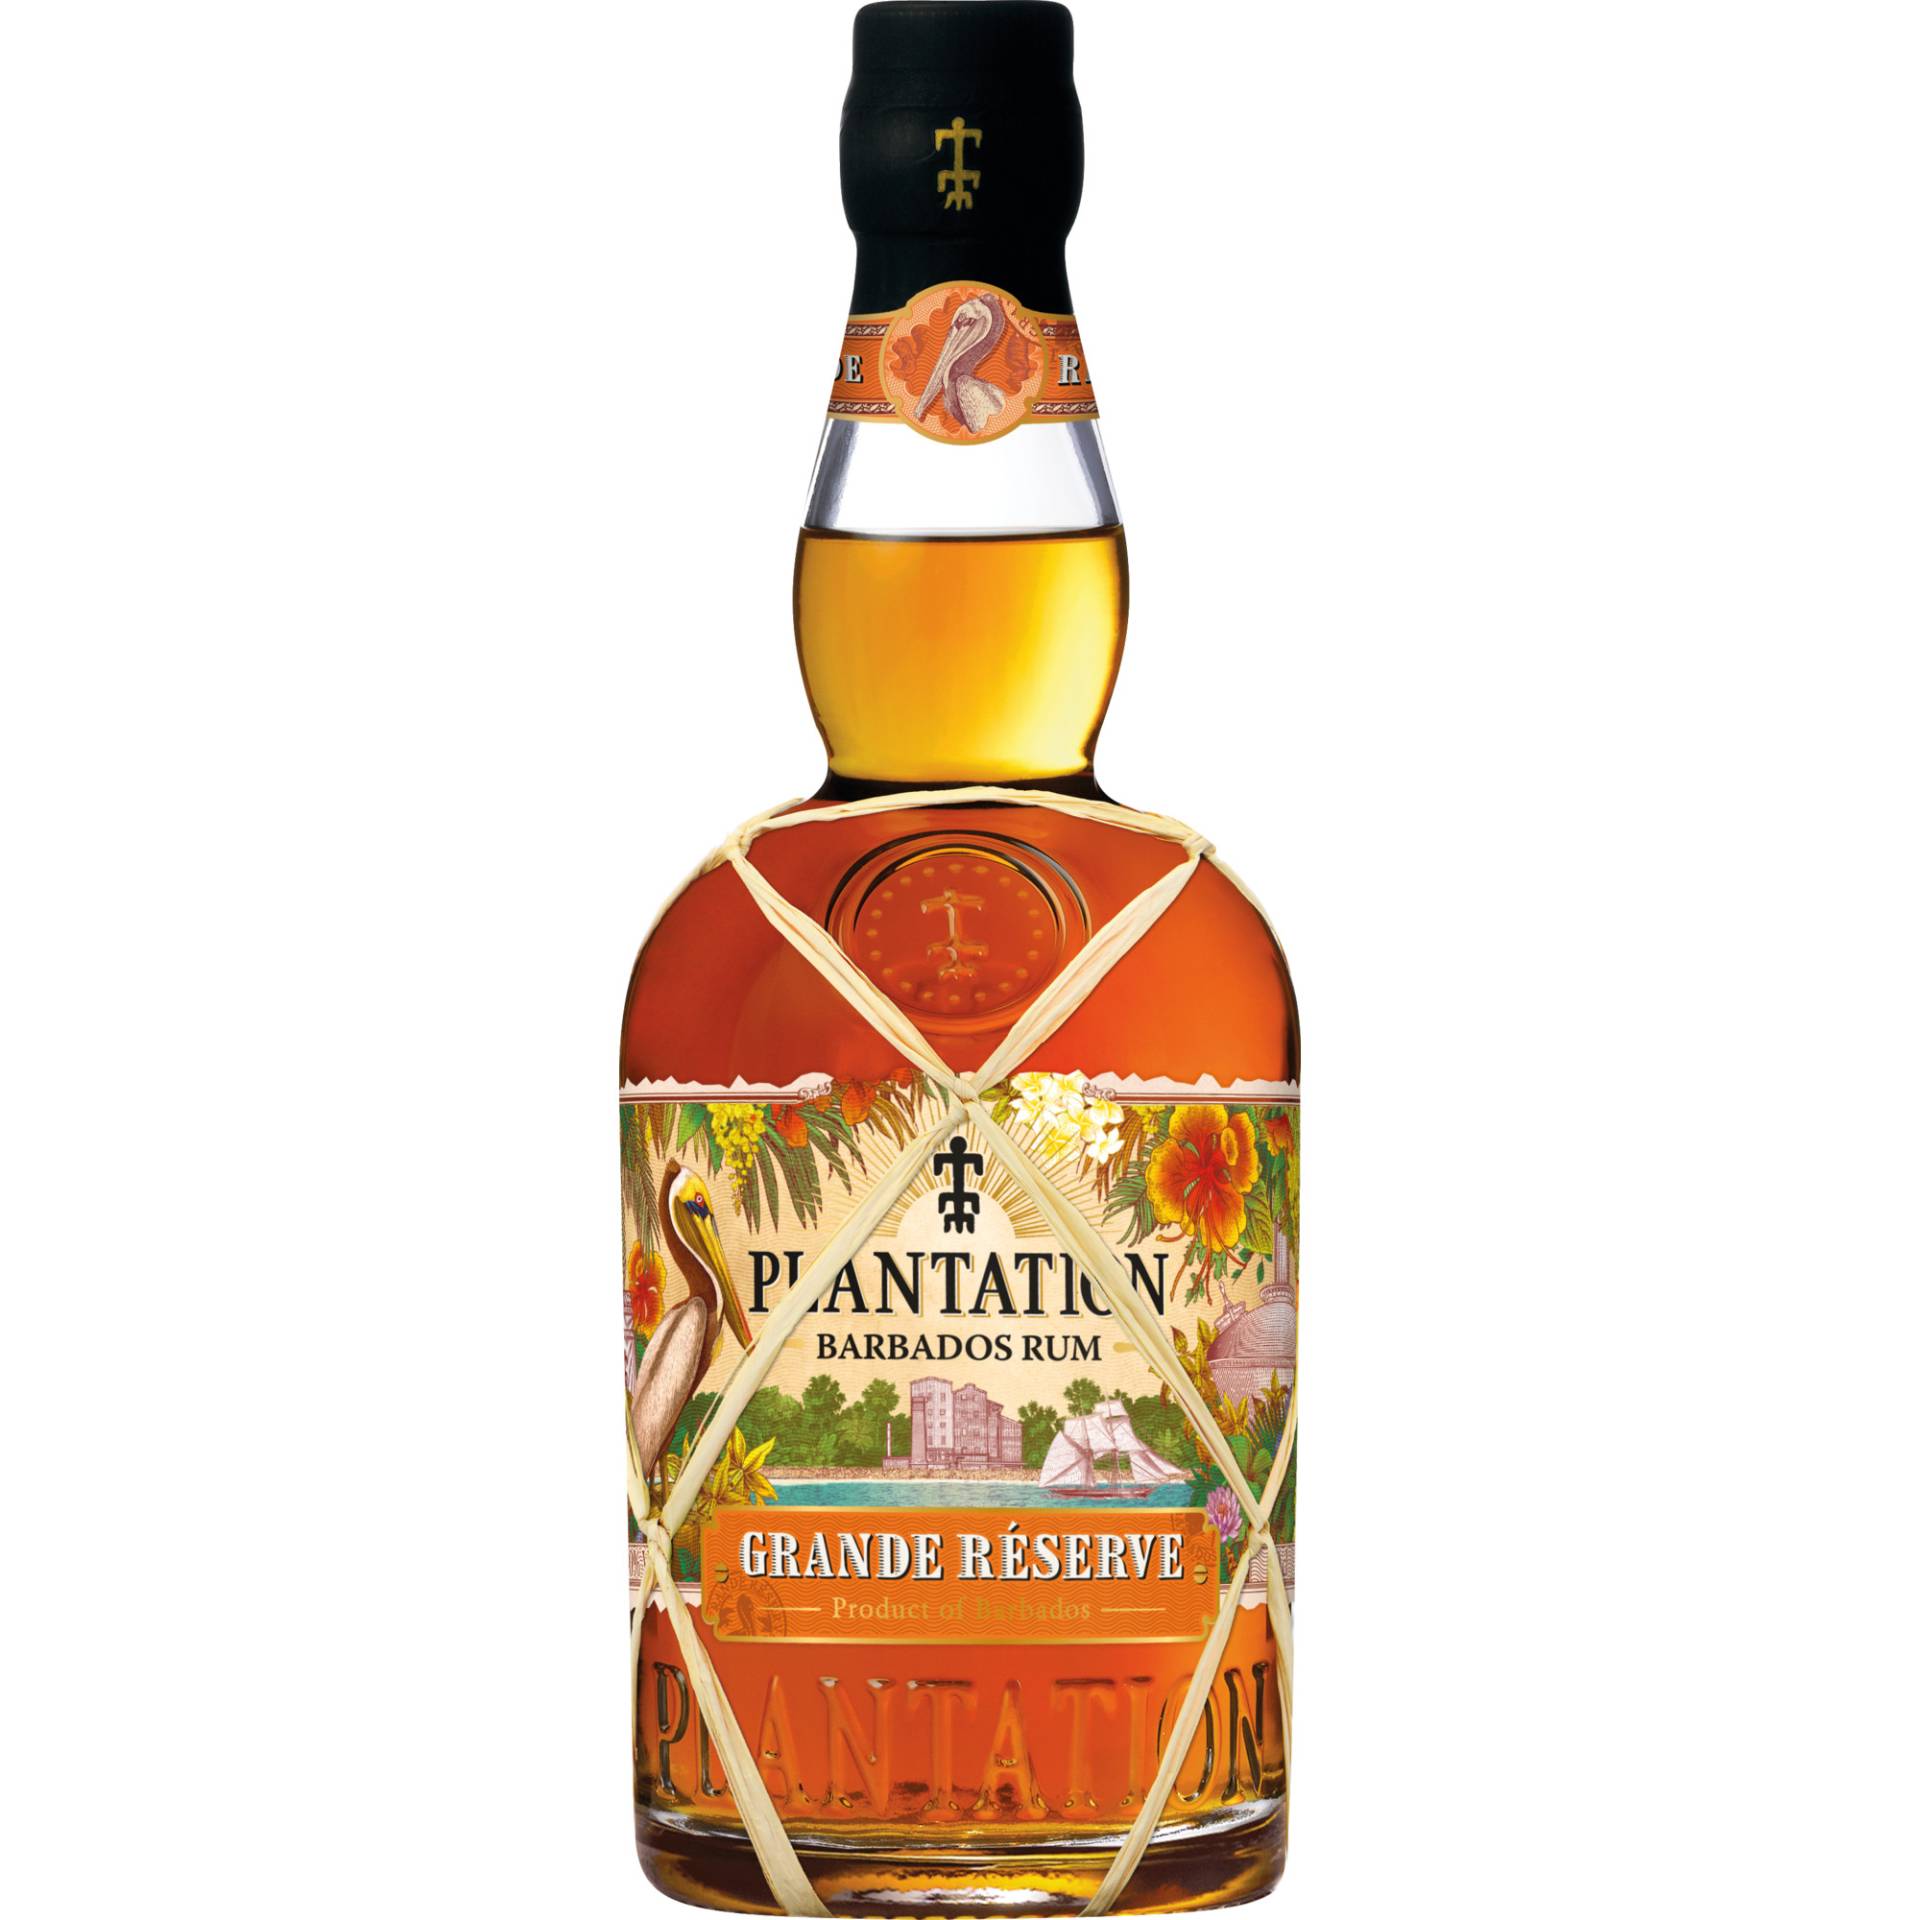 Plantation Barbados Rum Grande Réserve, 0,7 L, 40% Vol., Spirituosen von Ferrand Deutschland GmbH, Sundernallee 75, D-53636 Iserlohn